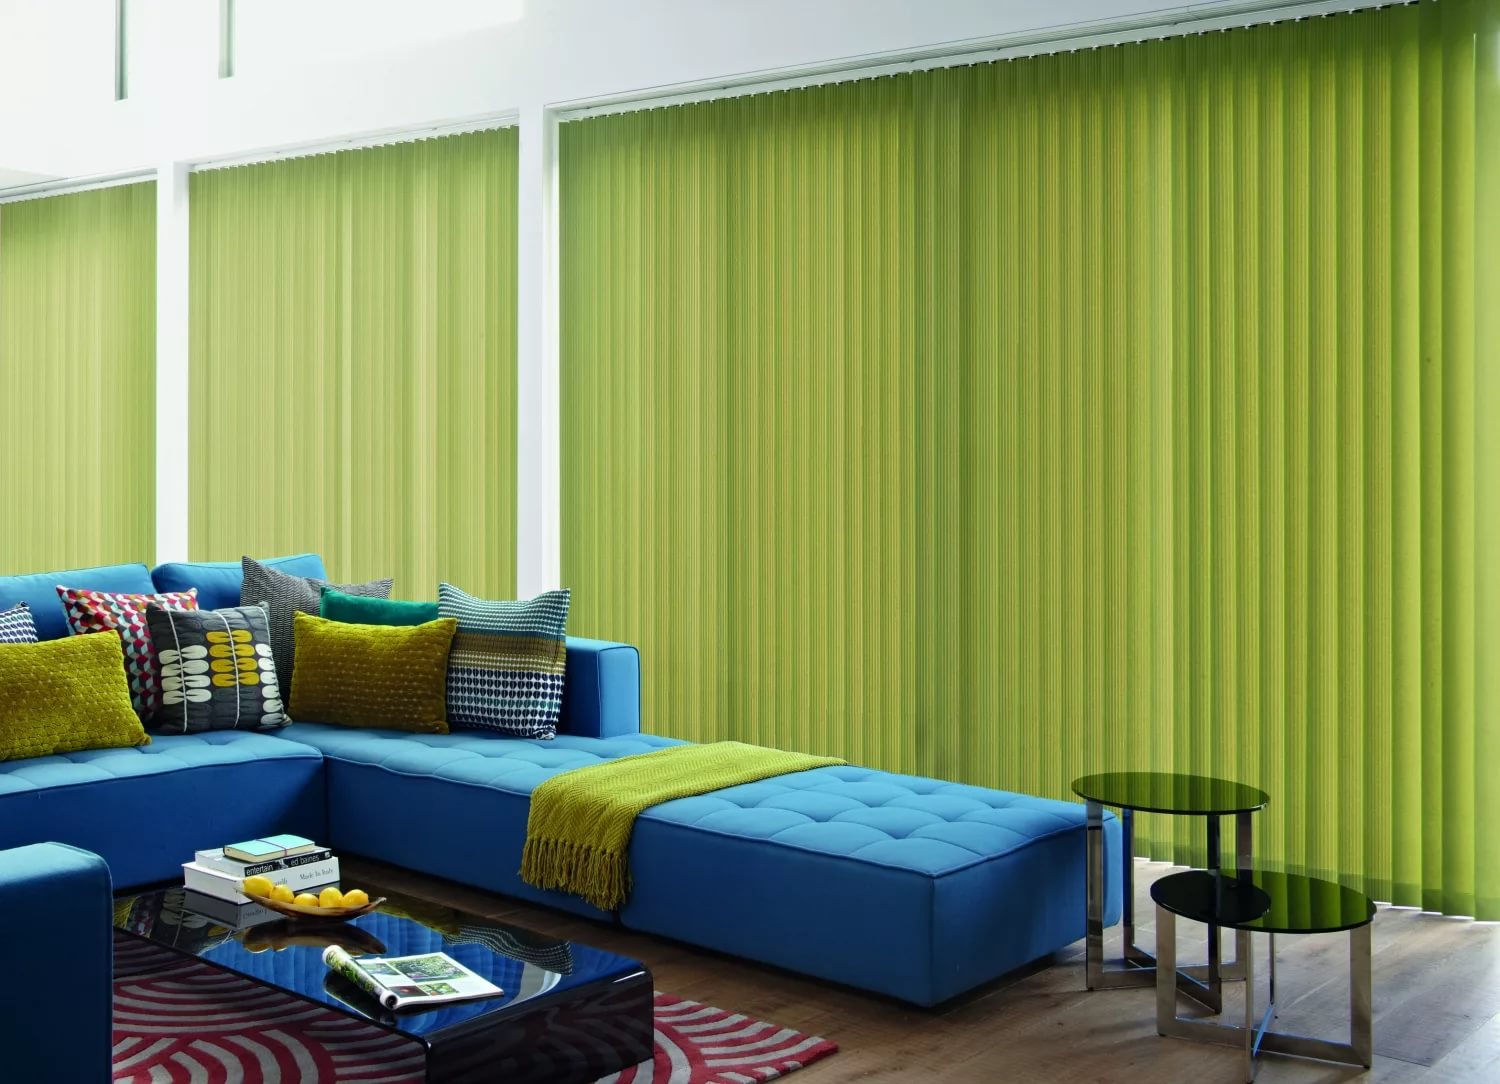 Divano blu nel soggiorno con tende verdi